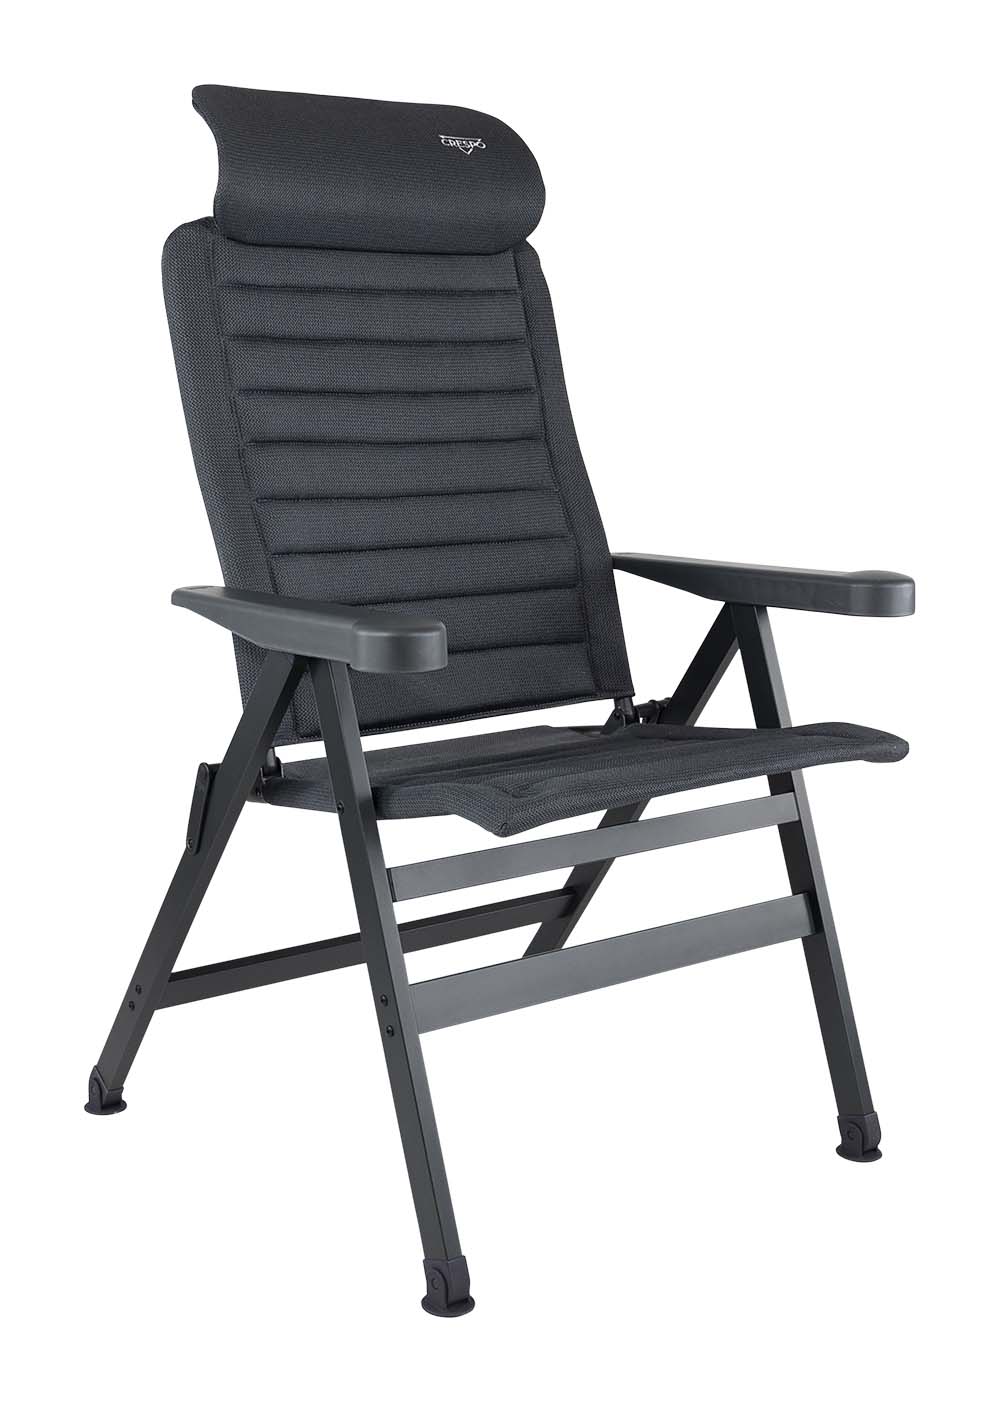 1149515 Een ergonomische in 7 standen verstelbare standenstoel. De stoel is uitgevoerd in een vierkant frame en voorzien van stabilisatievoeten waardoor de stoel altijd zeer stevig staat. Daarnaast is de stoel voorzien van een verstelbare hoofdsteun. De zeer comfortabele en chique stoffering is extra luchtdoorlatend en houdt door de open celstructuur geen vocht vast. Hierdoor is de stoel veel sneller droog dan stoelen met een traditionele schuimvulling. Deze stoel heeft een extra brede zit en kan tot 200 kg dragen. Biedt maximaal comfort door de in 7 standen verstelbare rugleuning. Zowel de rugleuning als de armleggers zijn ergonomisch gevormd. De stoel is voorzien van een geanodiseerd H-frame voor extra stabiliteit en stevigheid.